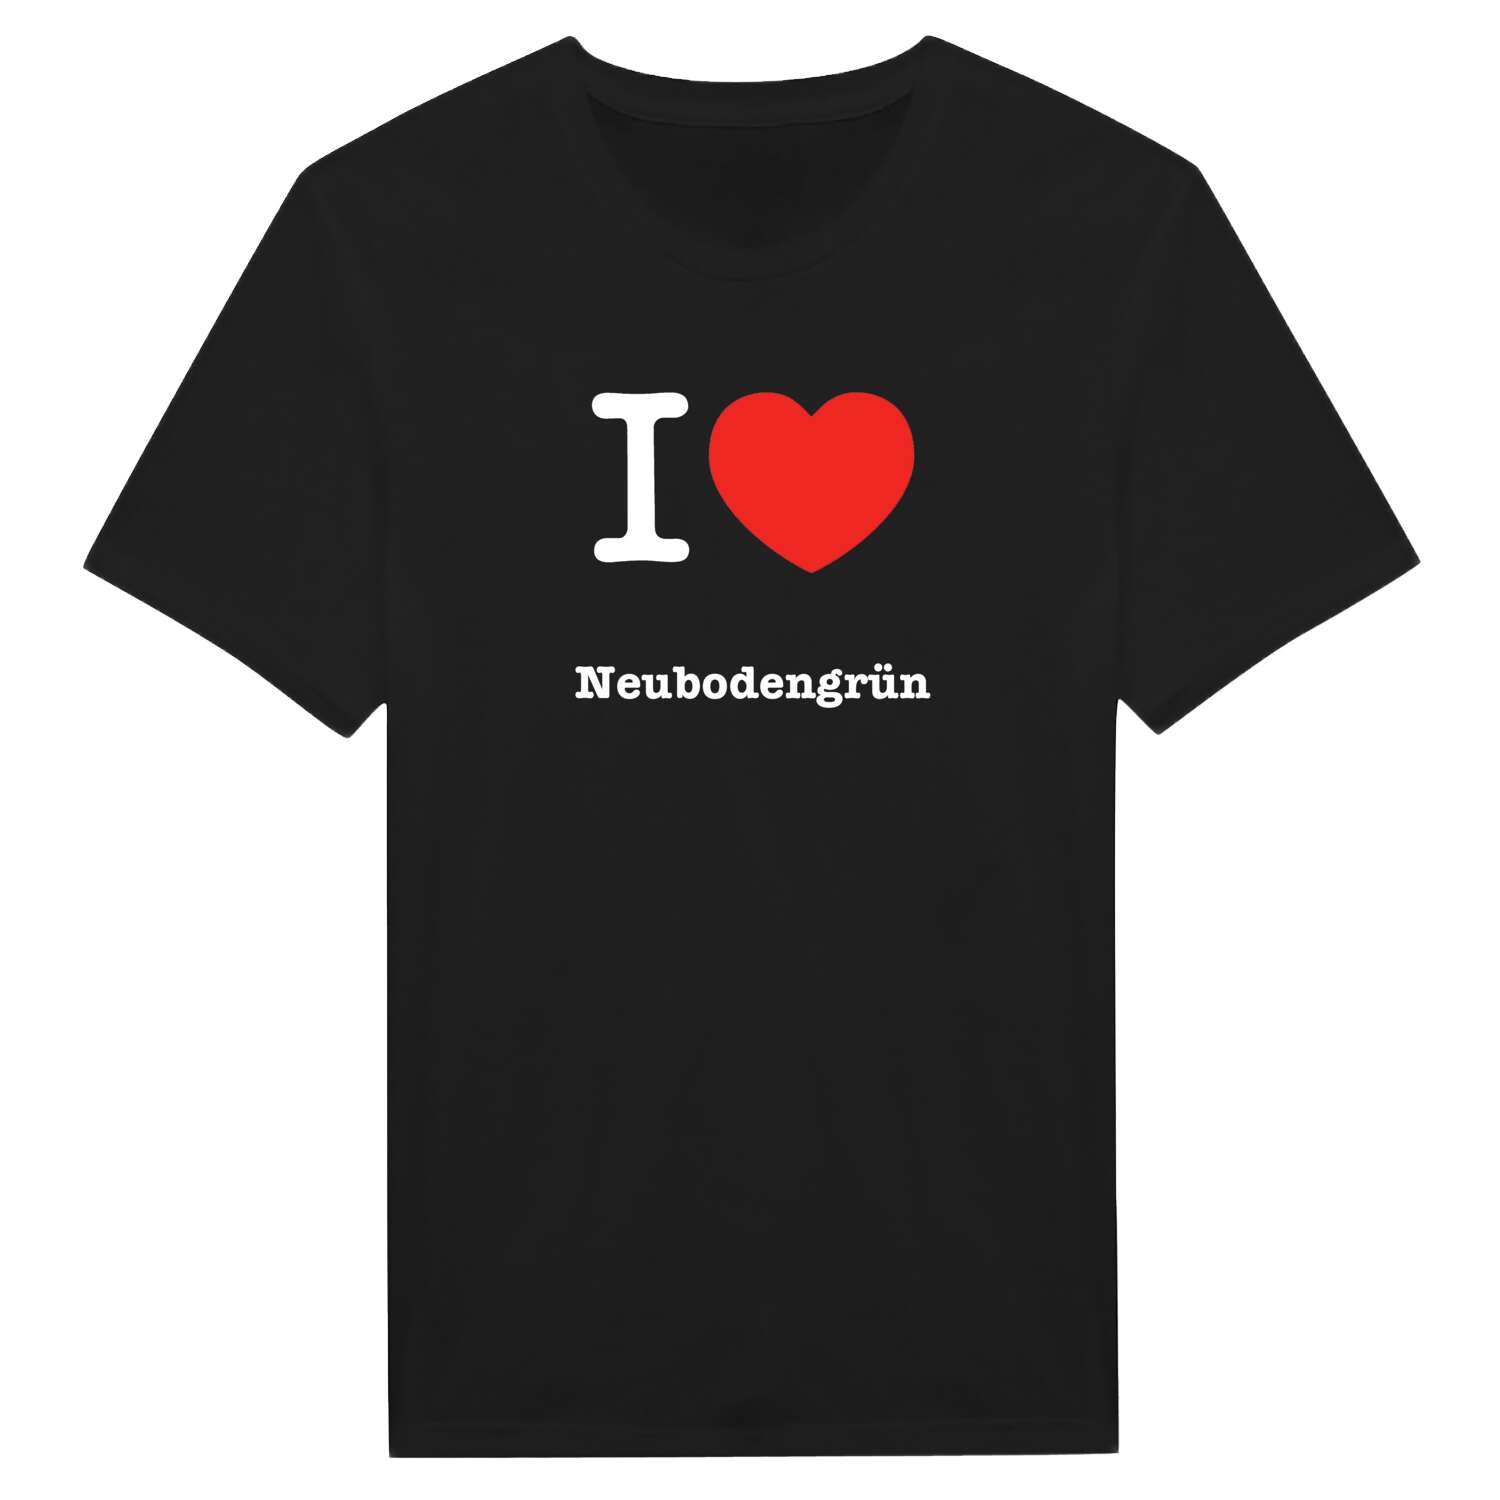 Neubodengrün T-Shirt »I love«